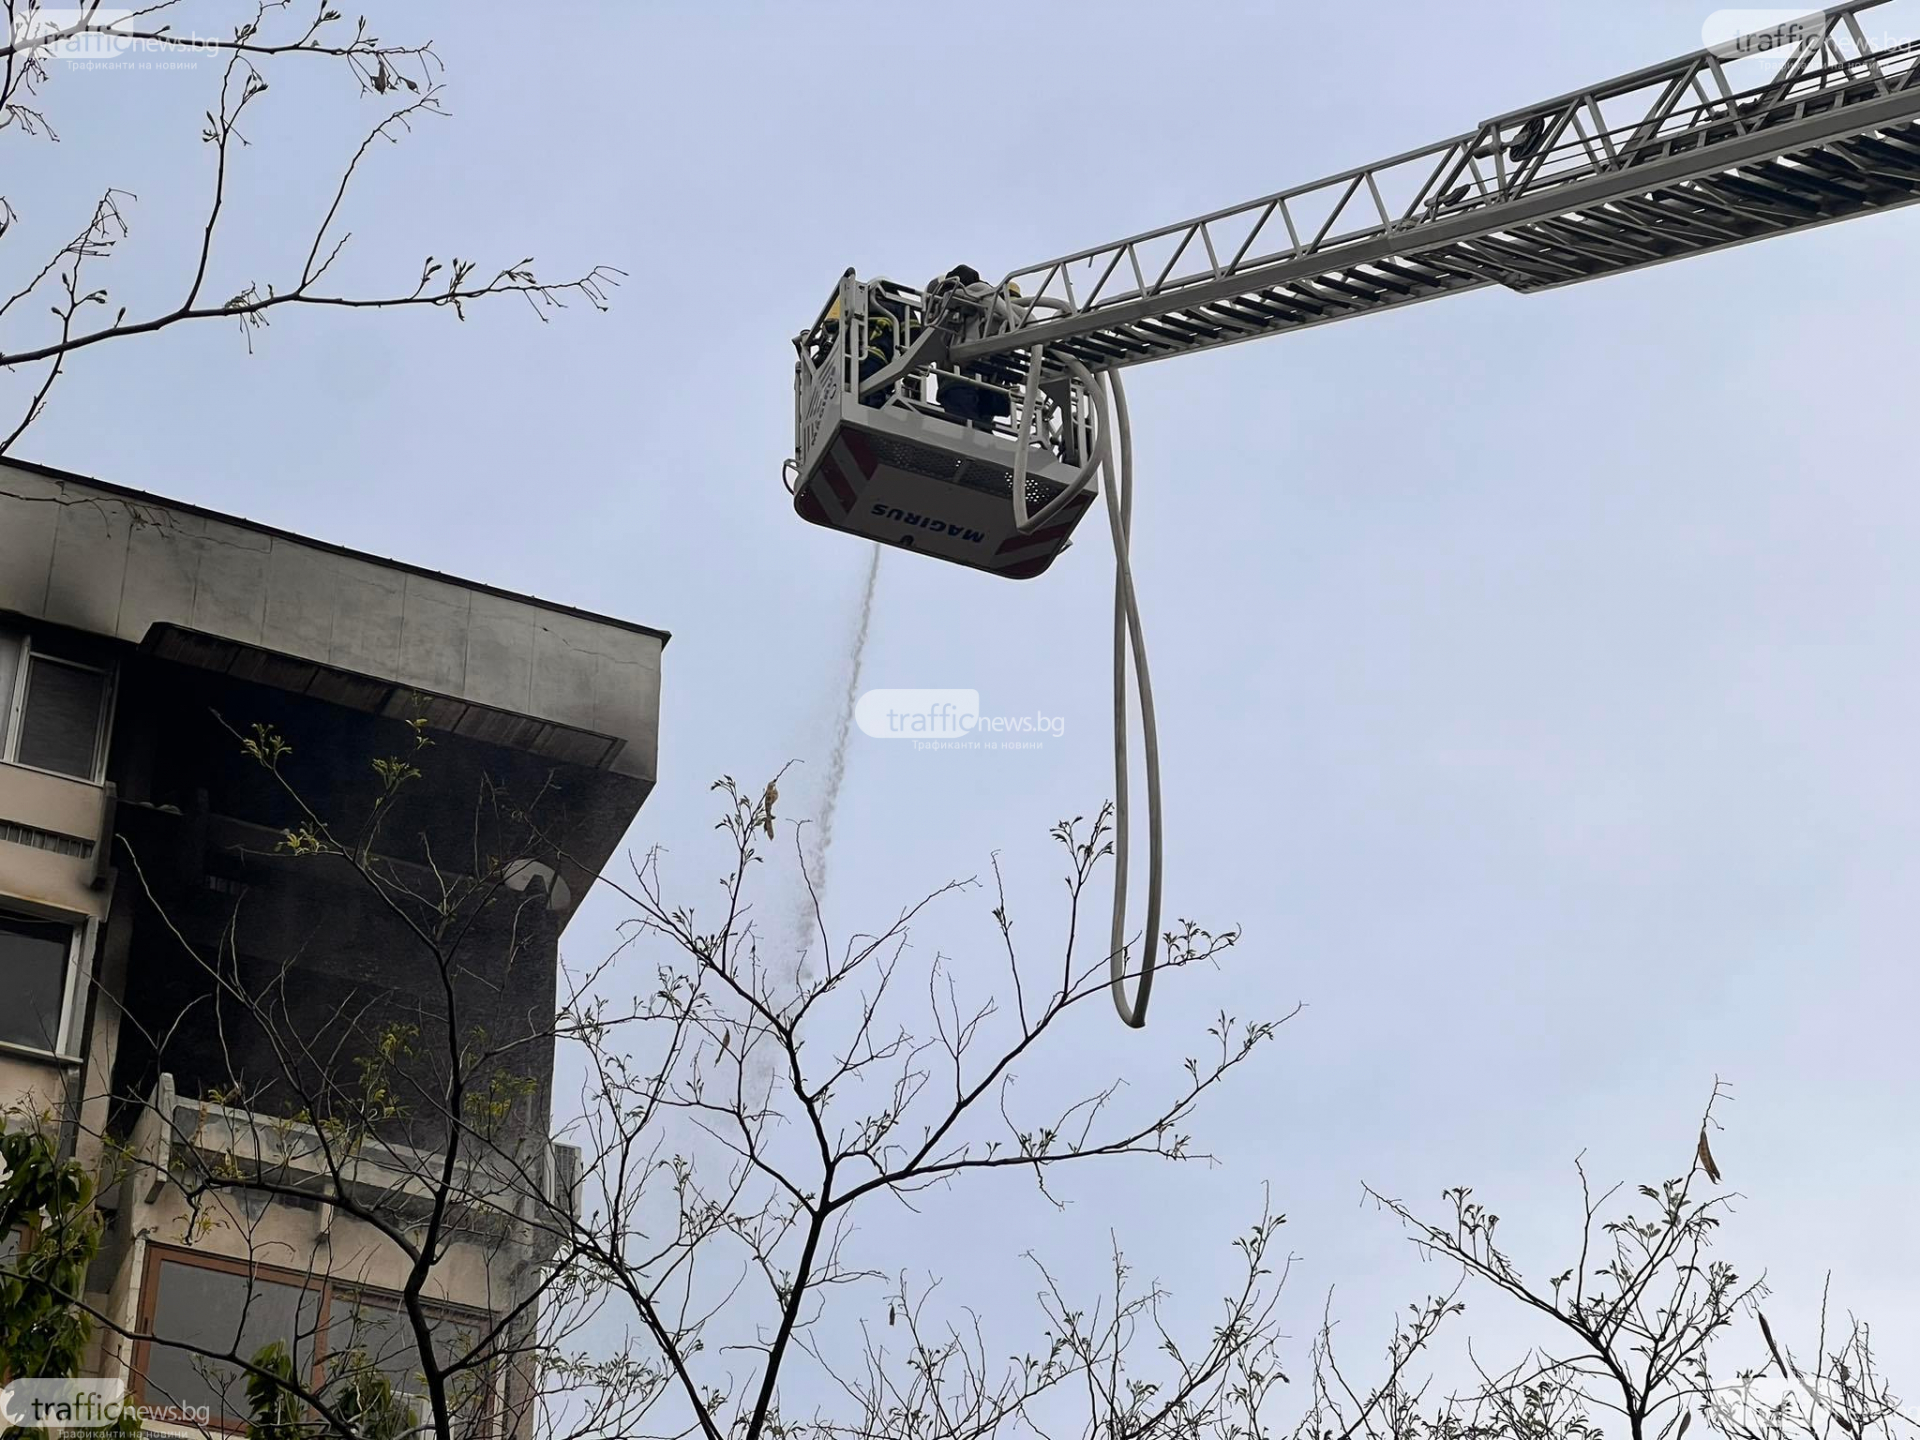 Извънредна ситуация в центъра на Пловдив! Полиция и пожарна са на мястото СНИМКИ